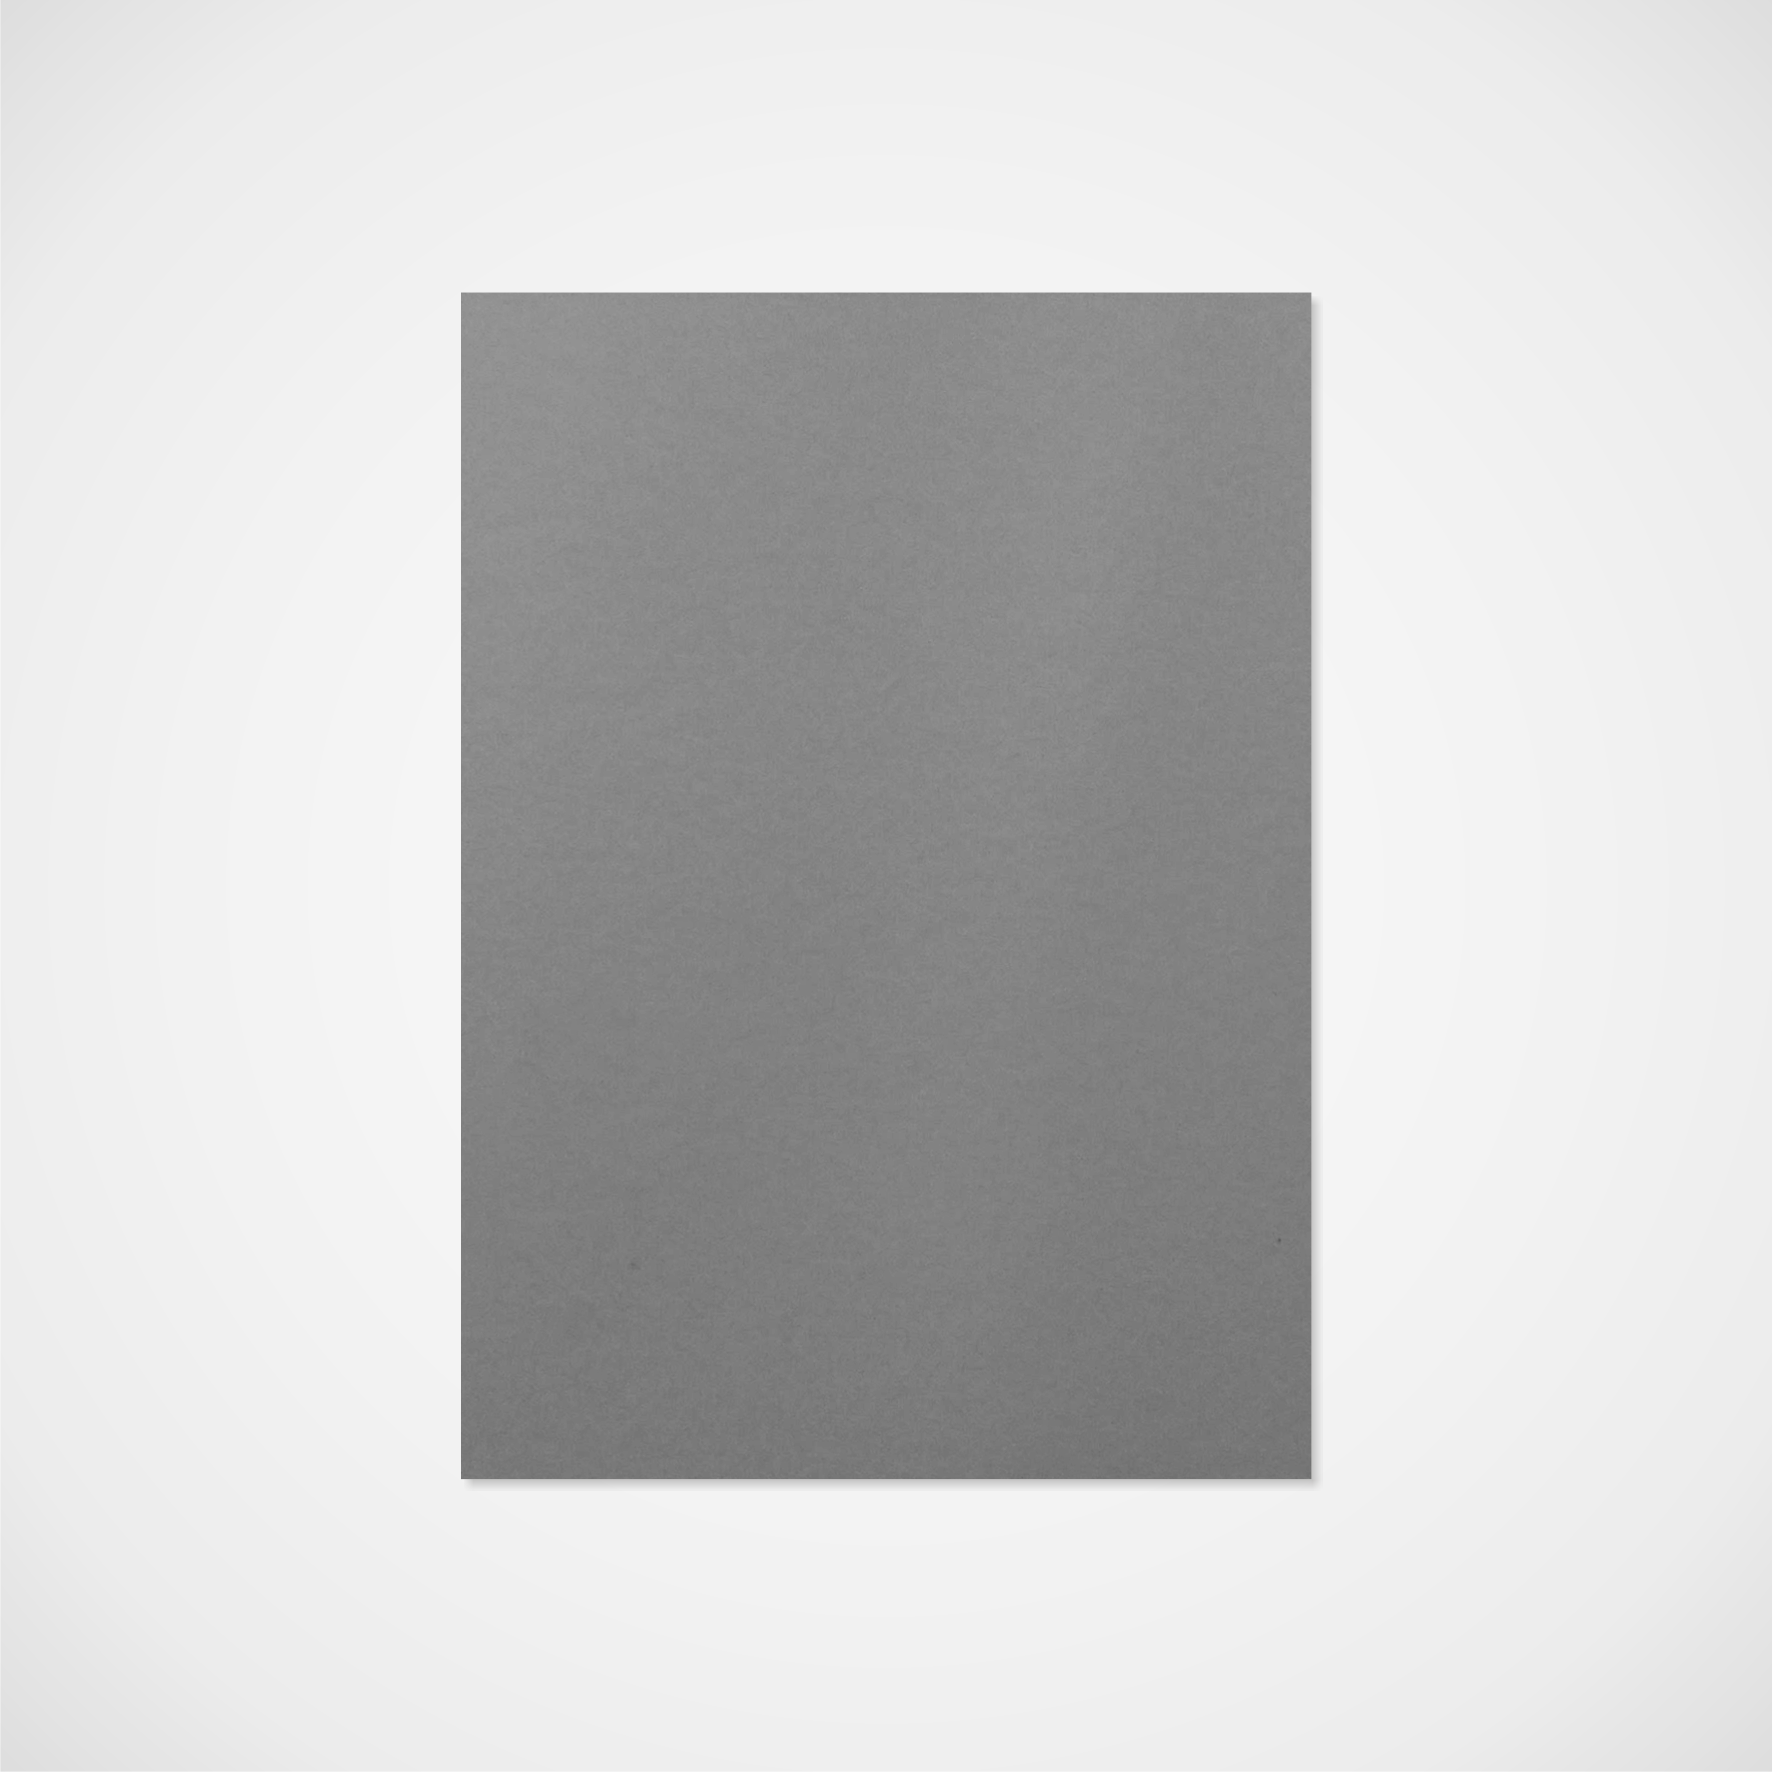 Titulní strana slohy – samostatně, jednobarevná – šedý matný papír